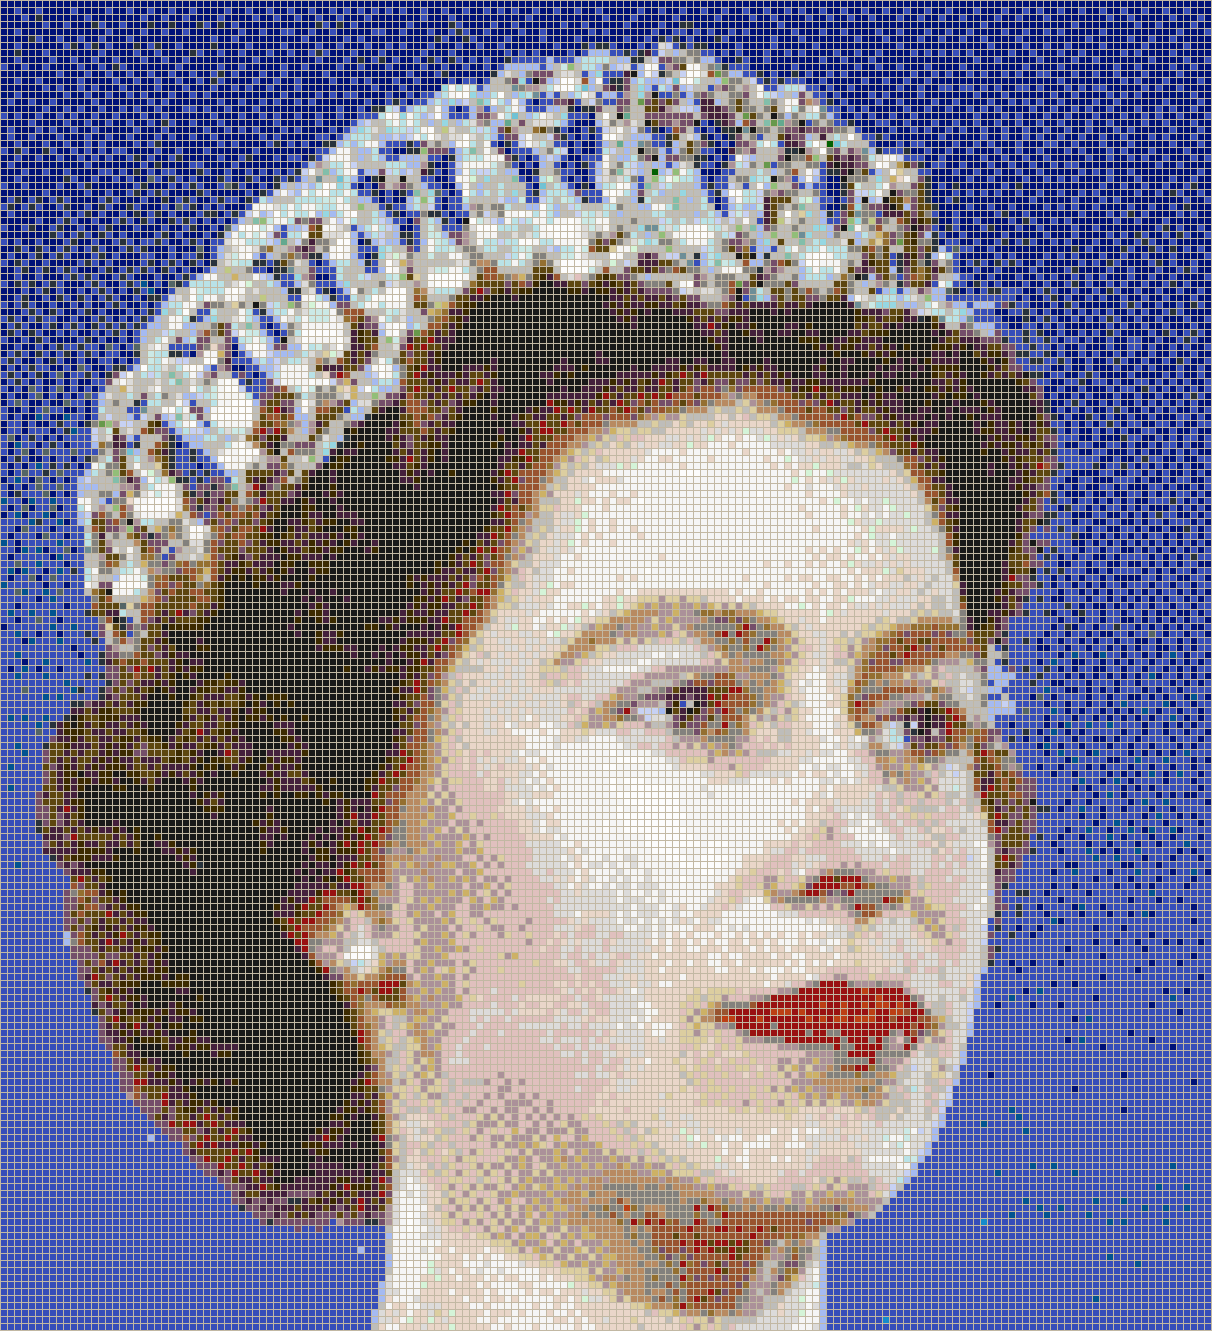 Queen Elizabeth II (1959) - Mosaic Tile Picture Art